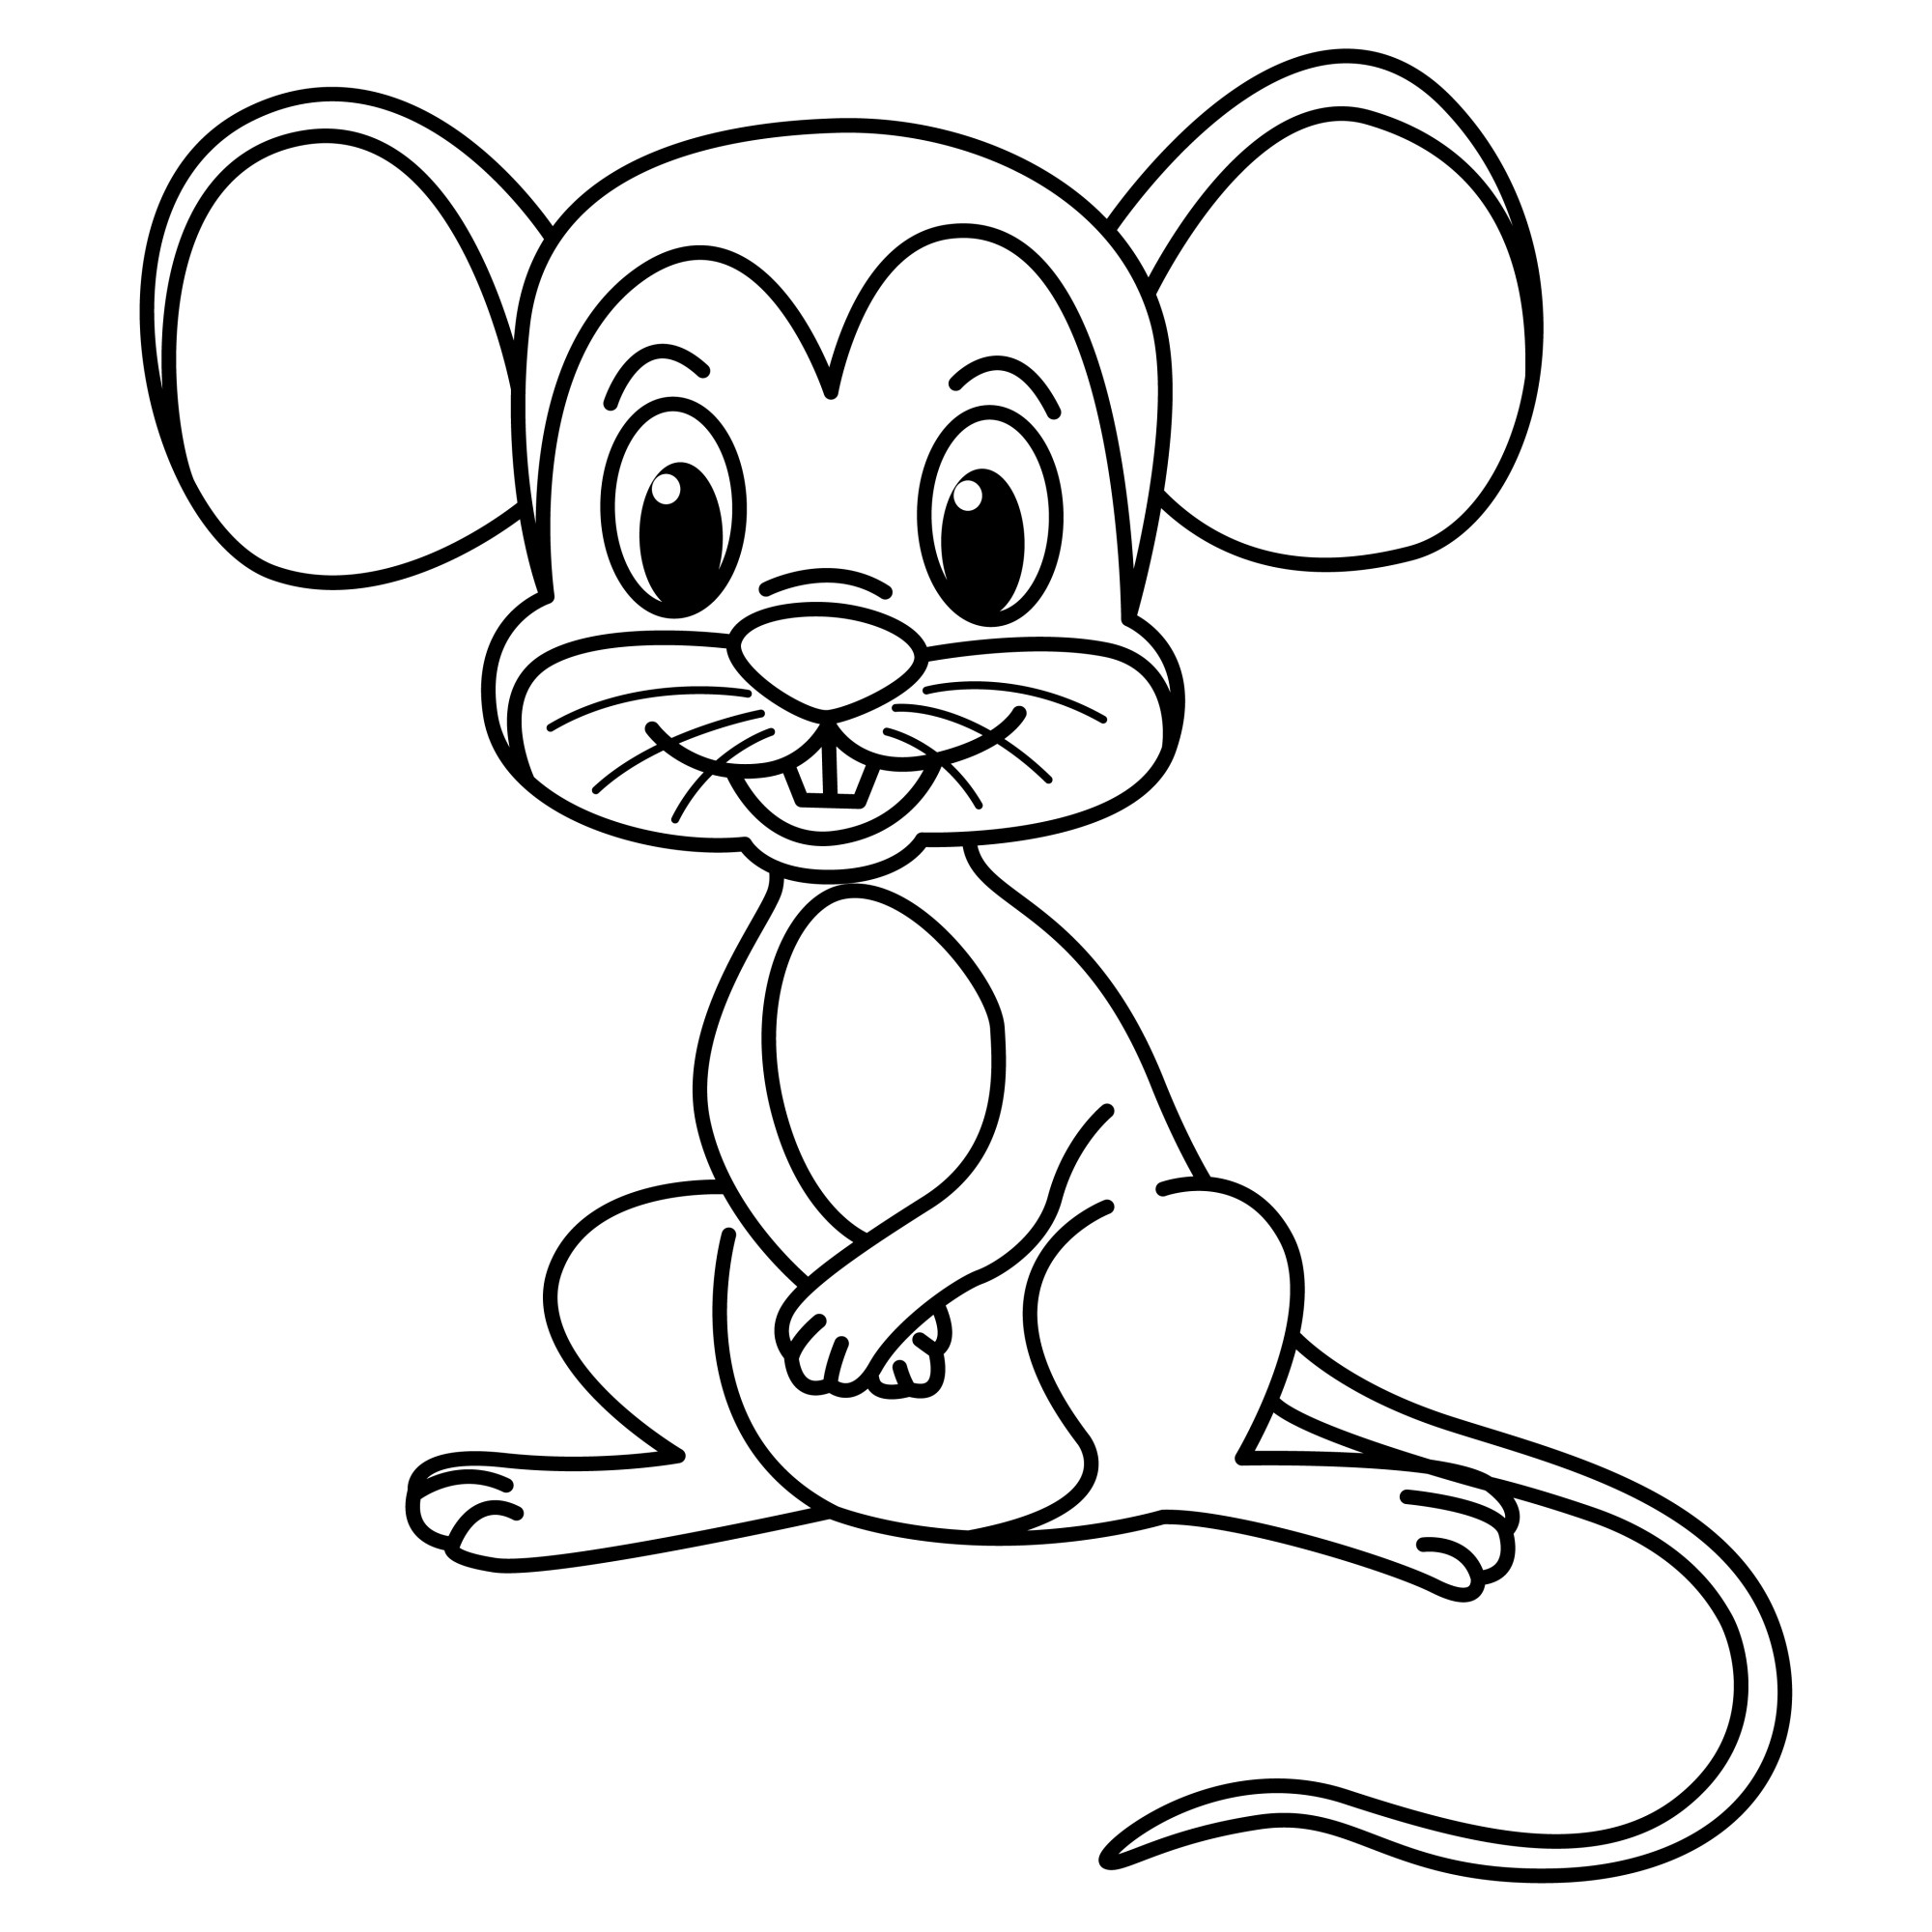 Раскраска для детей: мышка с усами